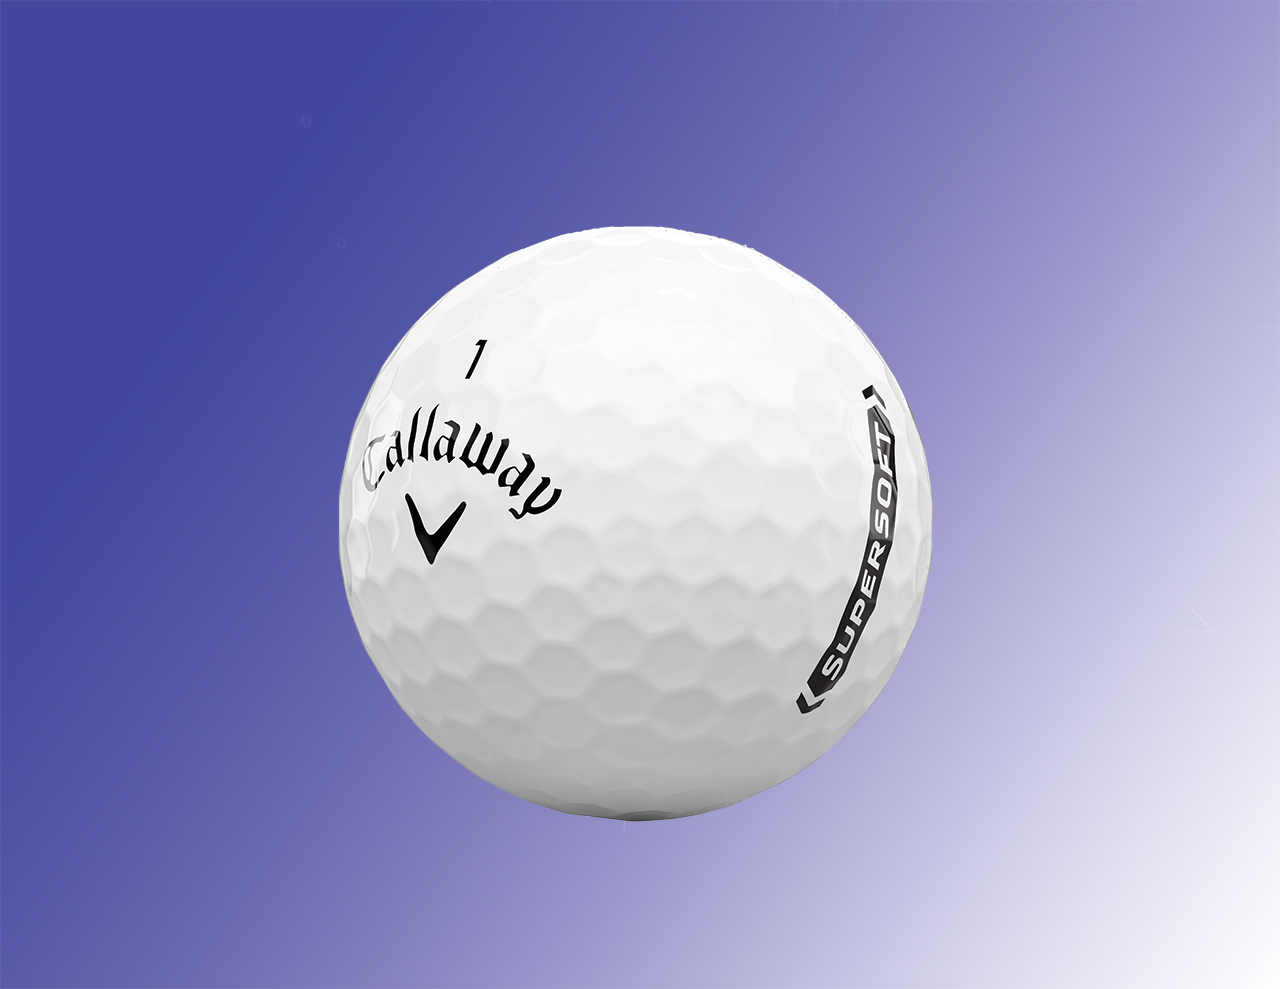 Callaway Supersoft golf ball review